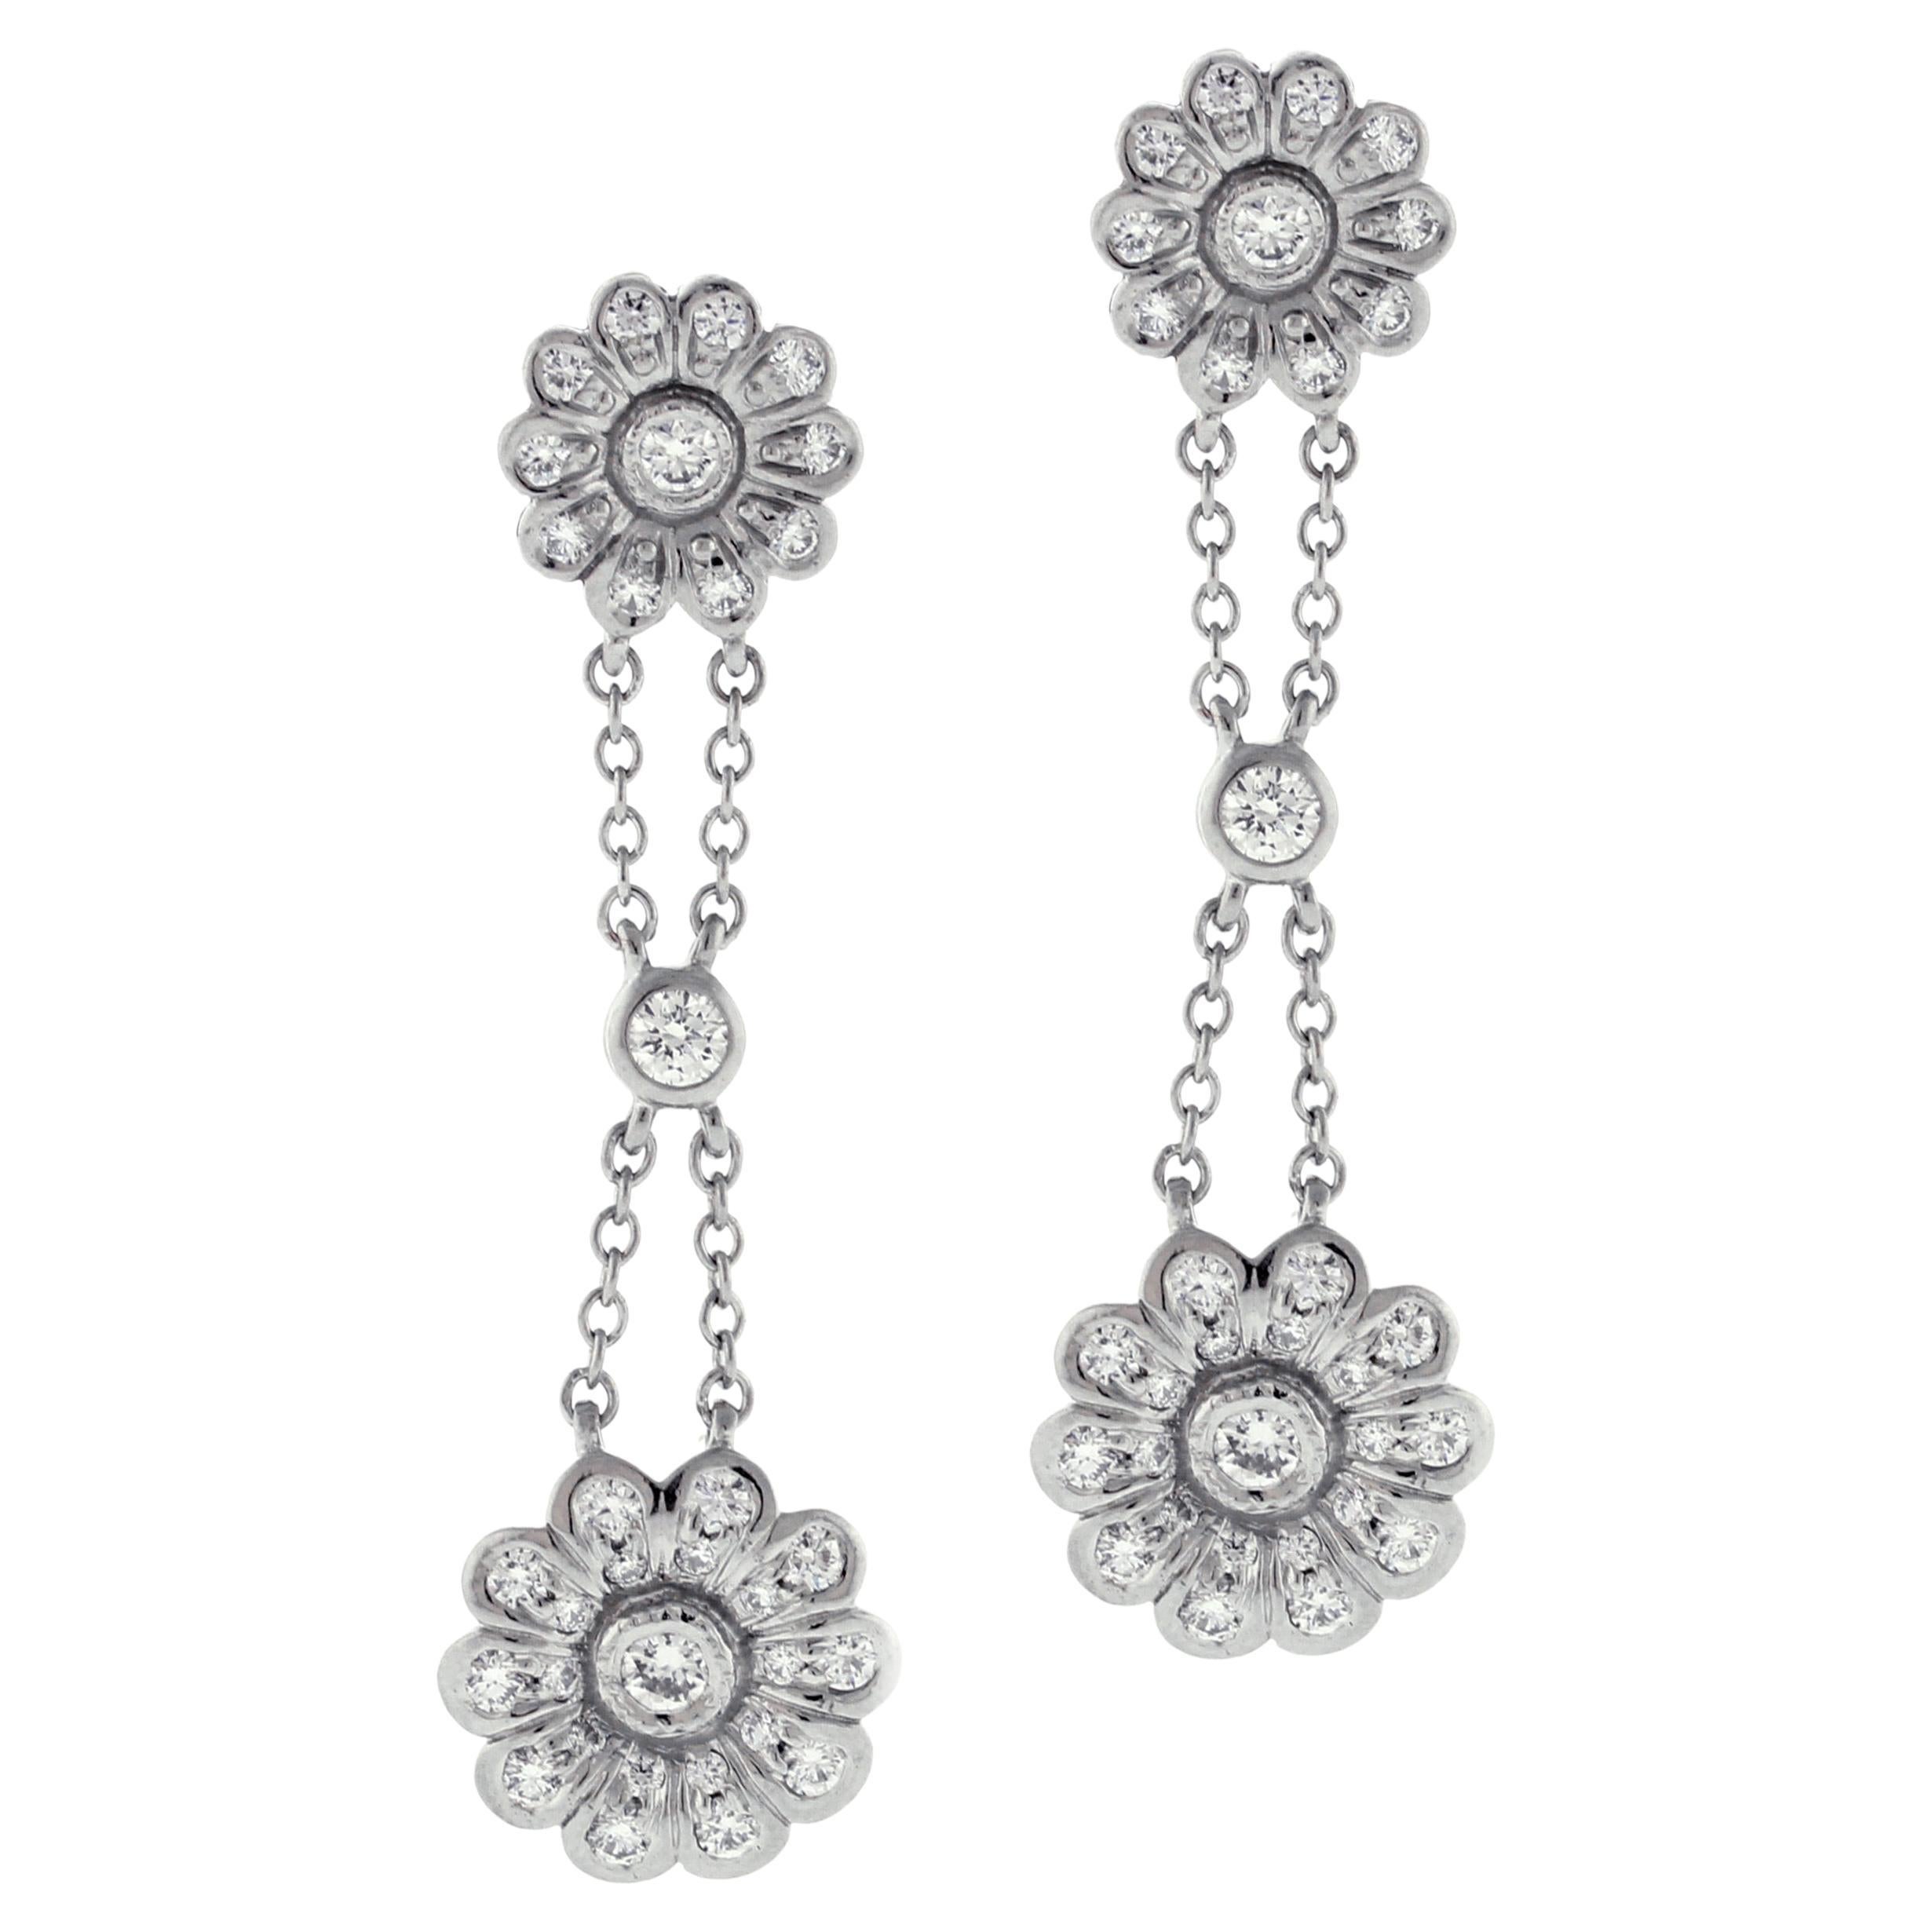 Tiffany & Co Diamond Double Rose Drop Earrings